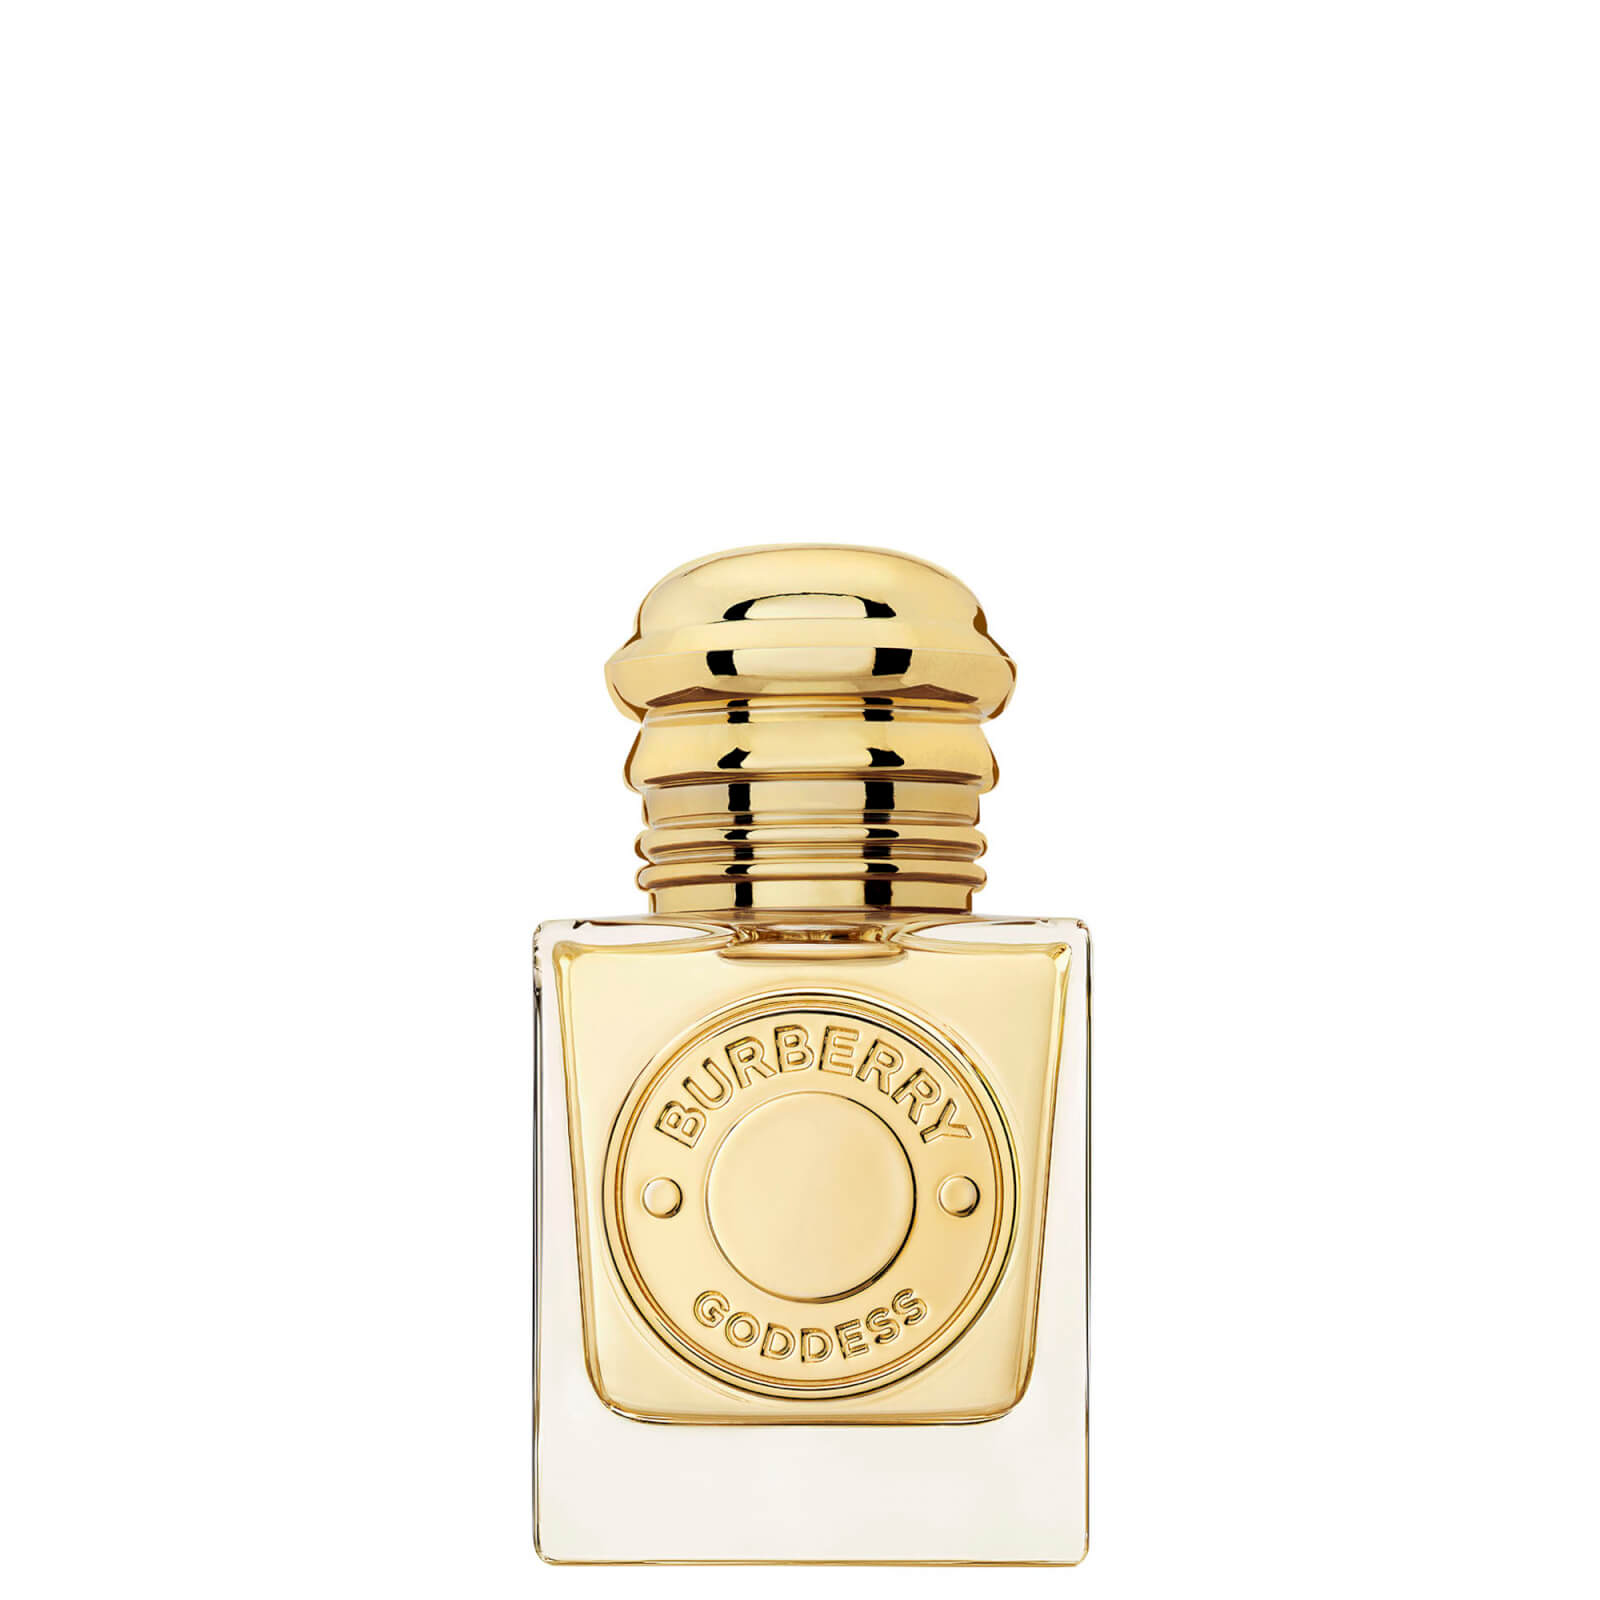 Photos - Women's Fragrance Burberry Goddess Eau de Parfum for Women 30ml 99350093272 